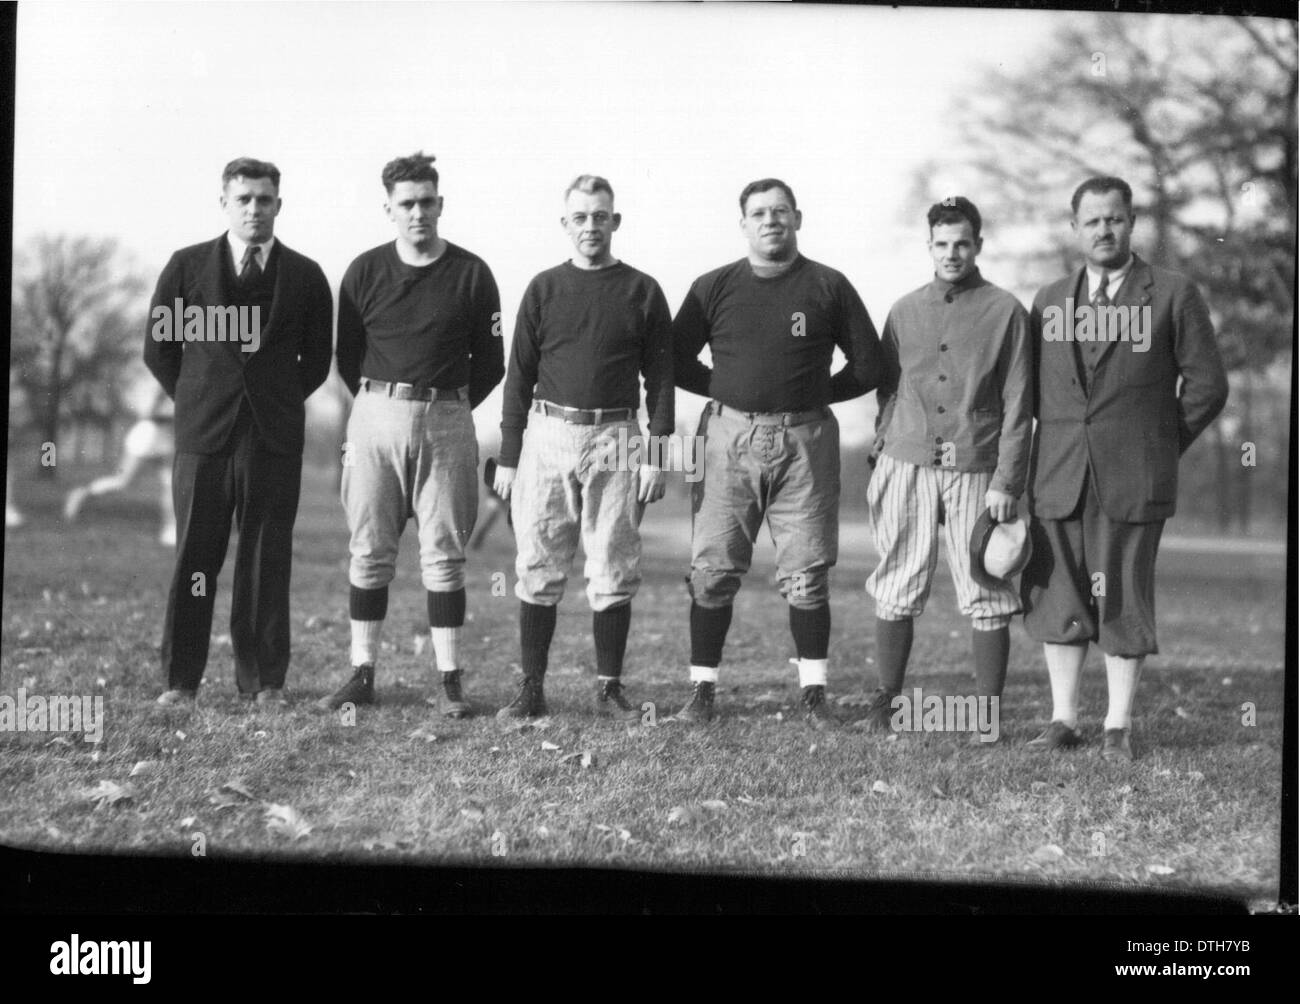 miami-university-coaches-1932-stock-photo-alamy